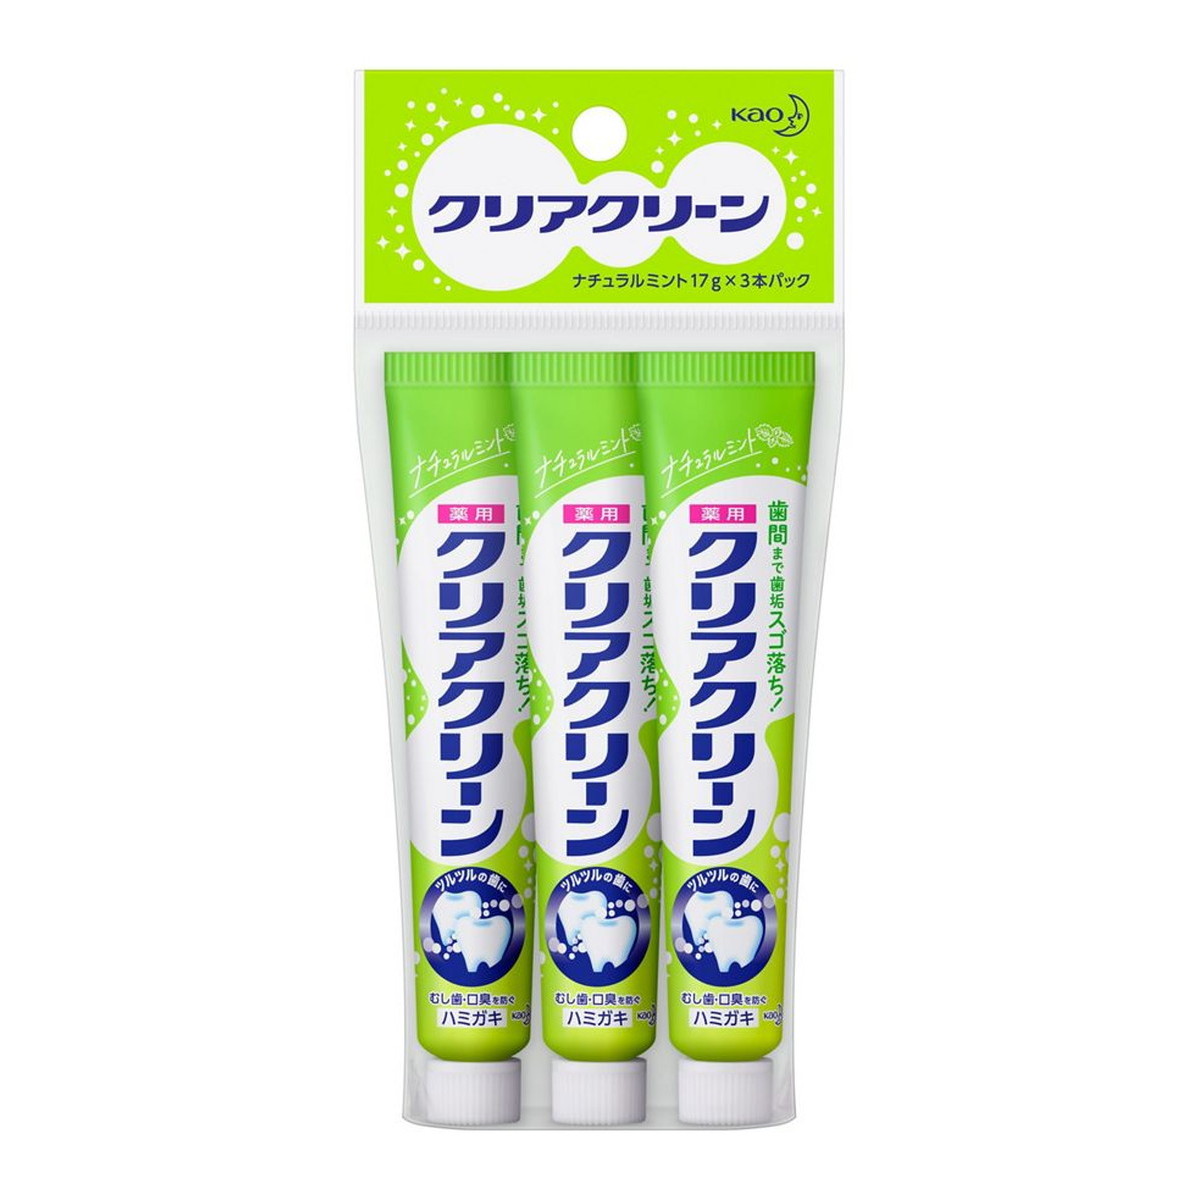 Kao クリアクリーン ナチュラルミント（17g×3本パック）×96セット クリアクリーン 歯磨き粉の商品画像